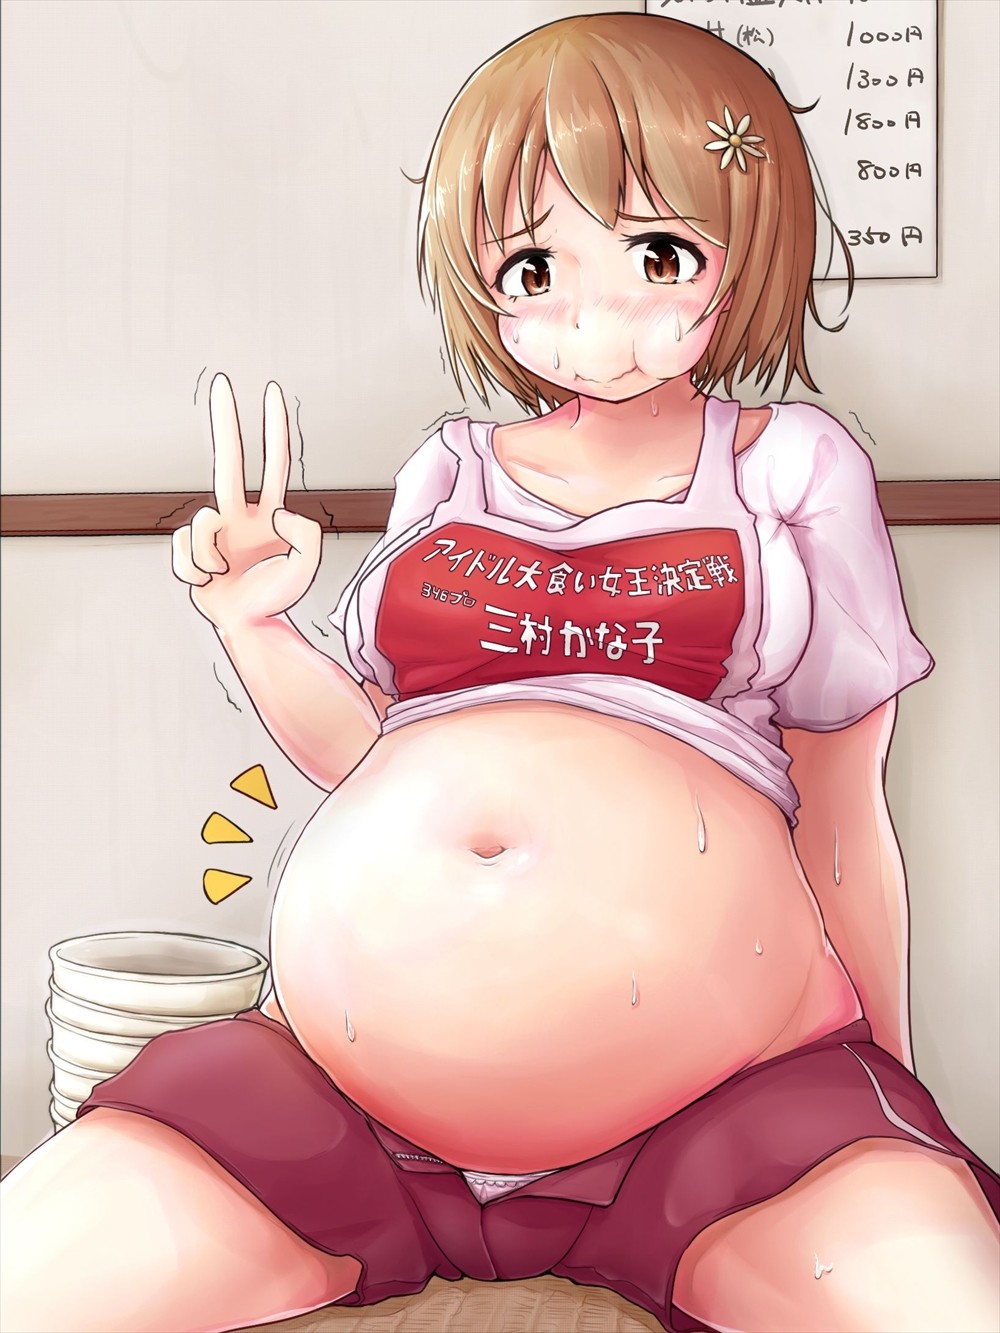 girl Manga about a fat